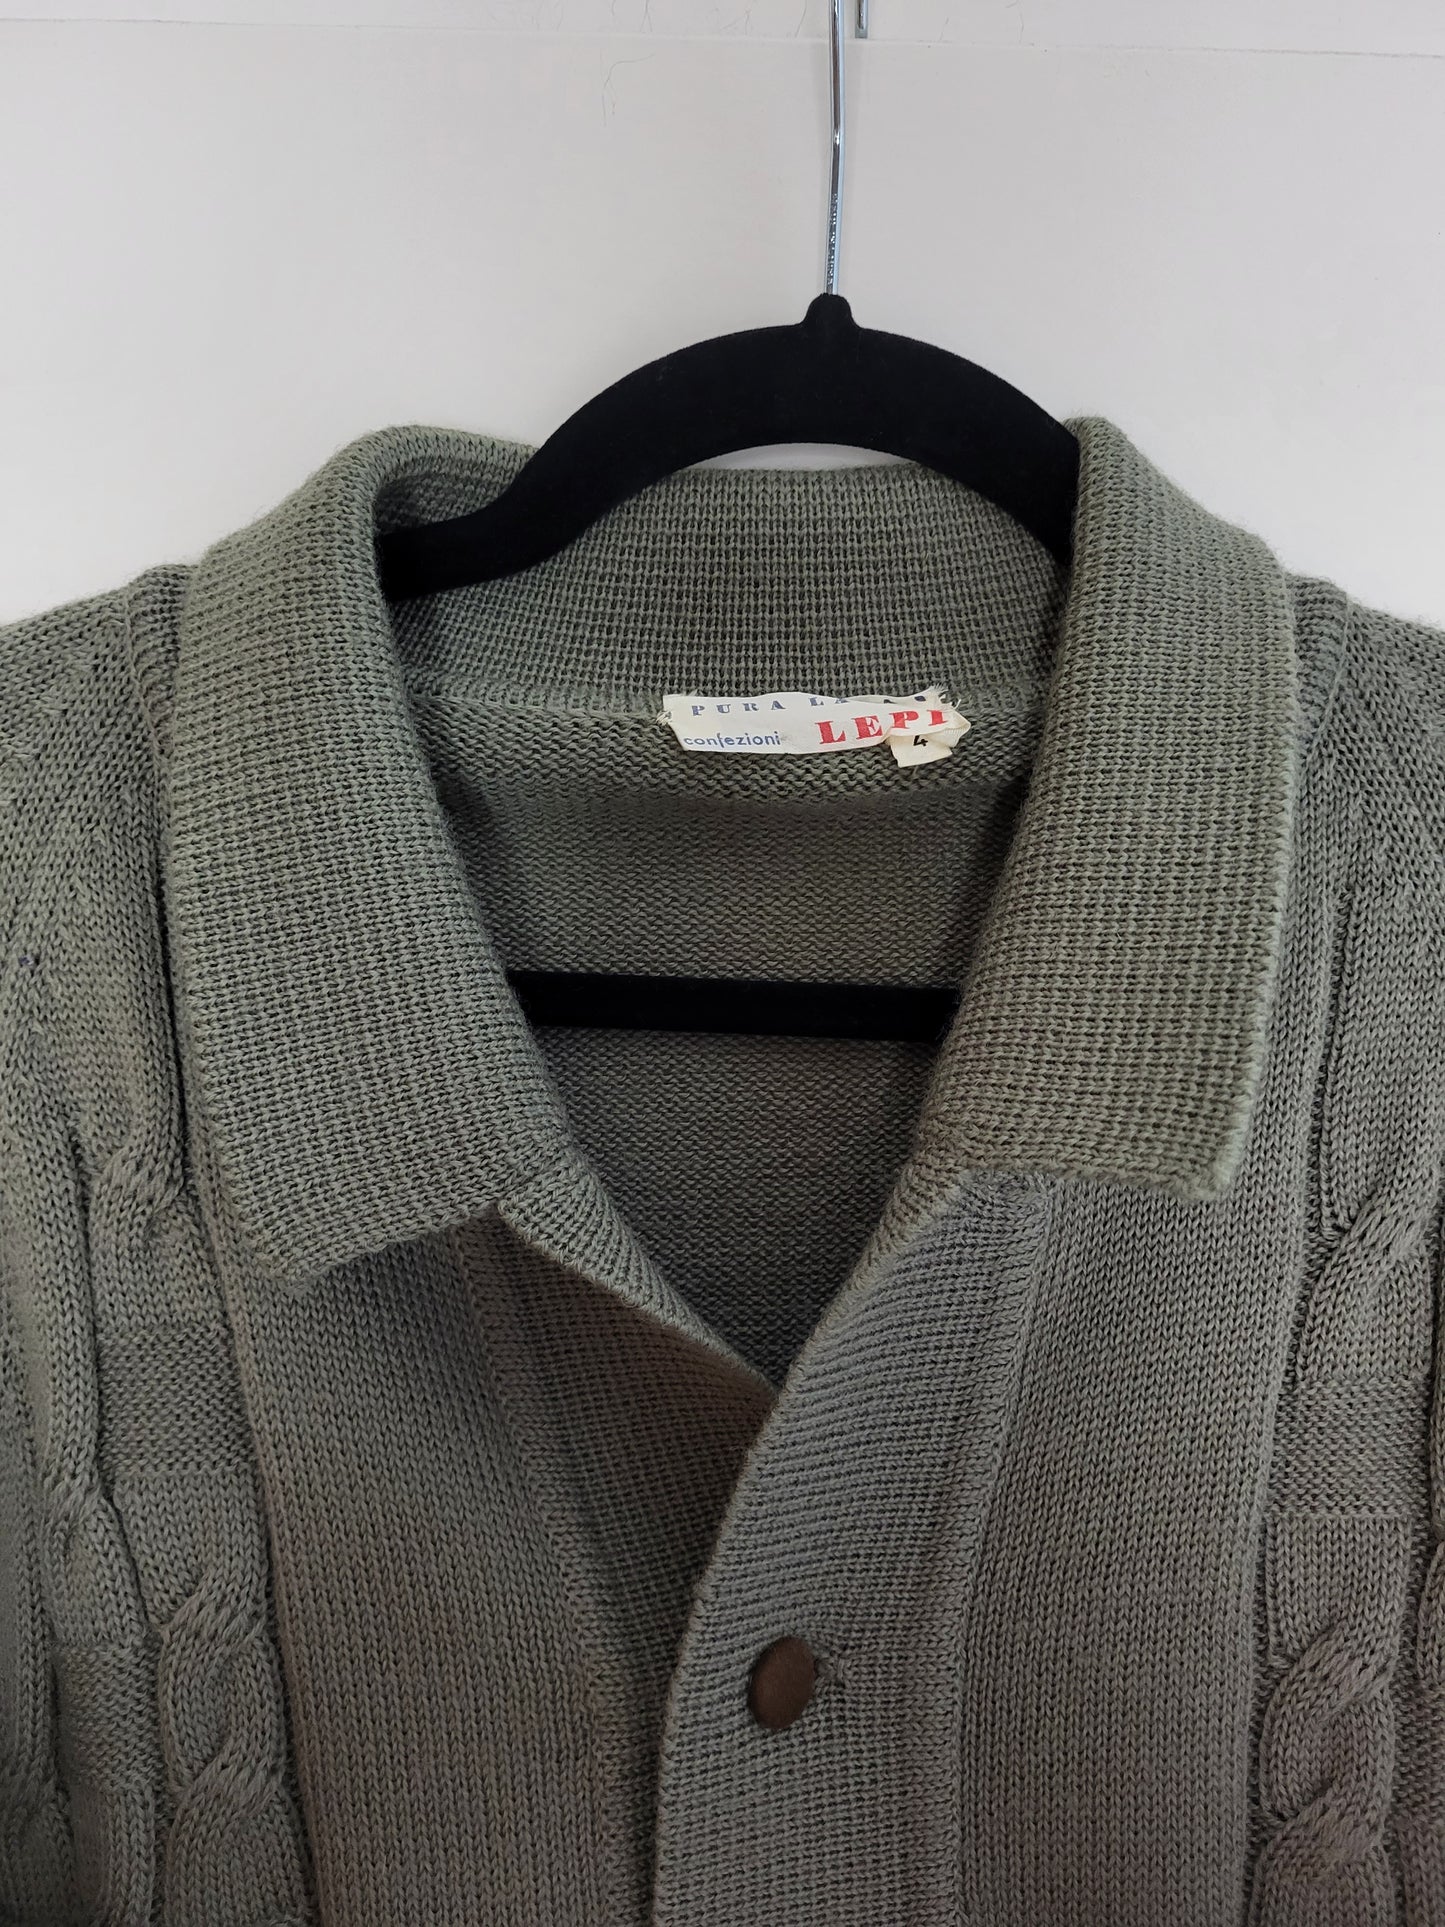 Vintage LEPI - Pullover/Strickjacke - Muster - Vintage Italy - Oliv/Grau - Herren - M